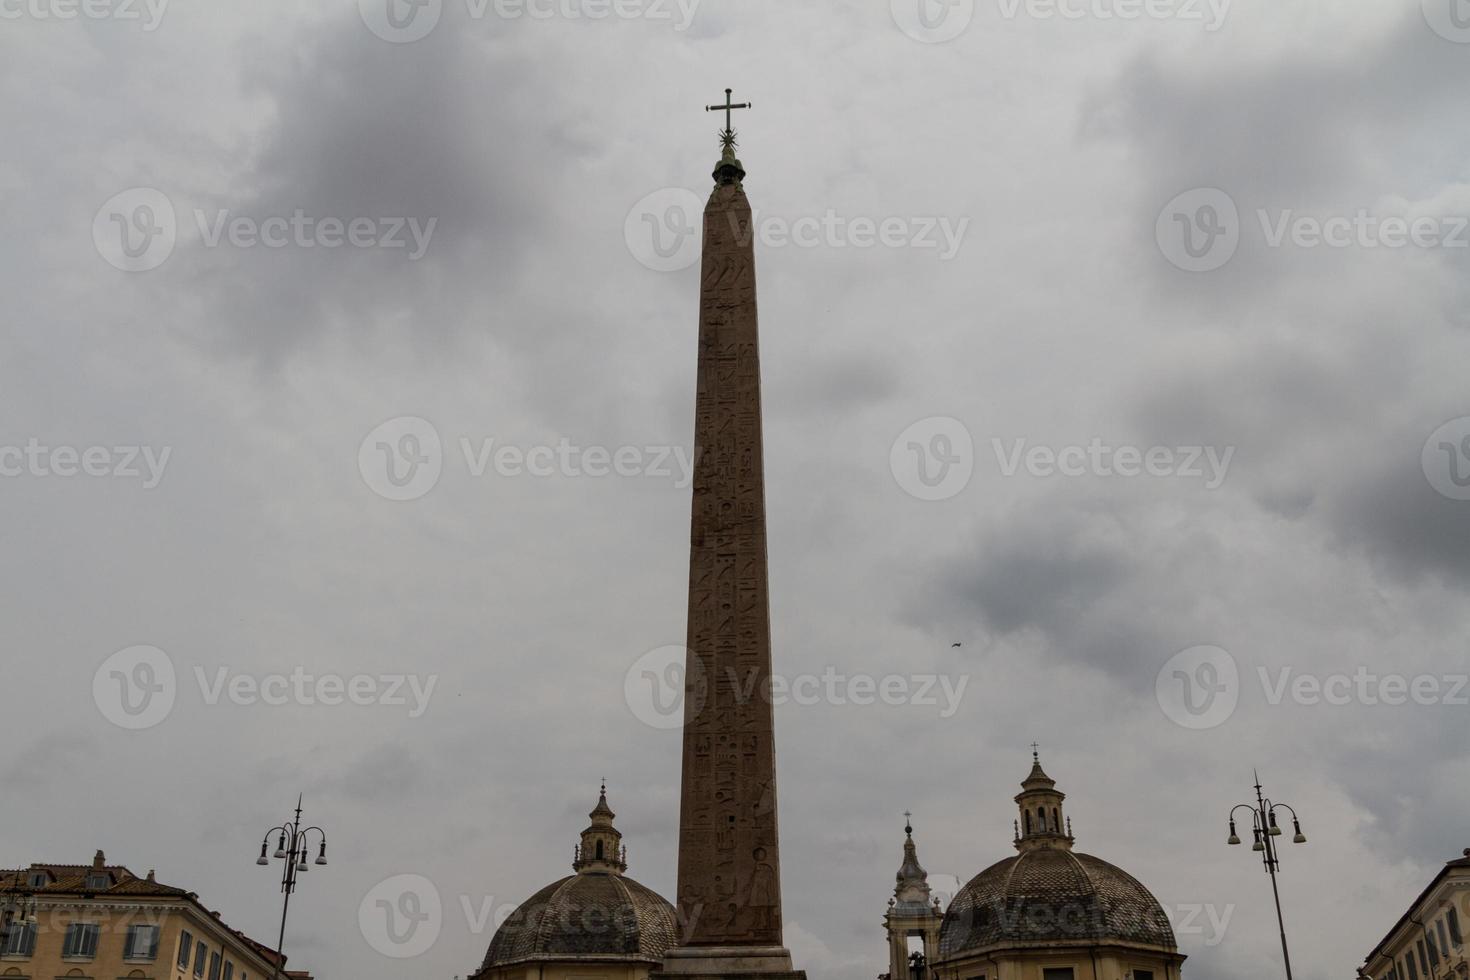 Piazza del Popolo in Rom foto